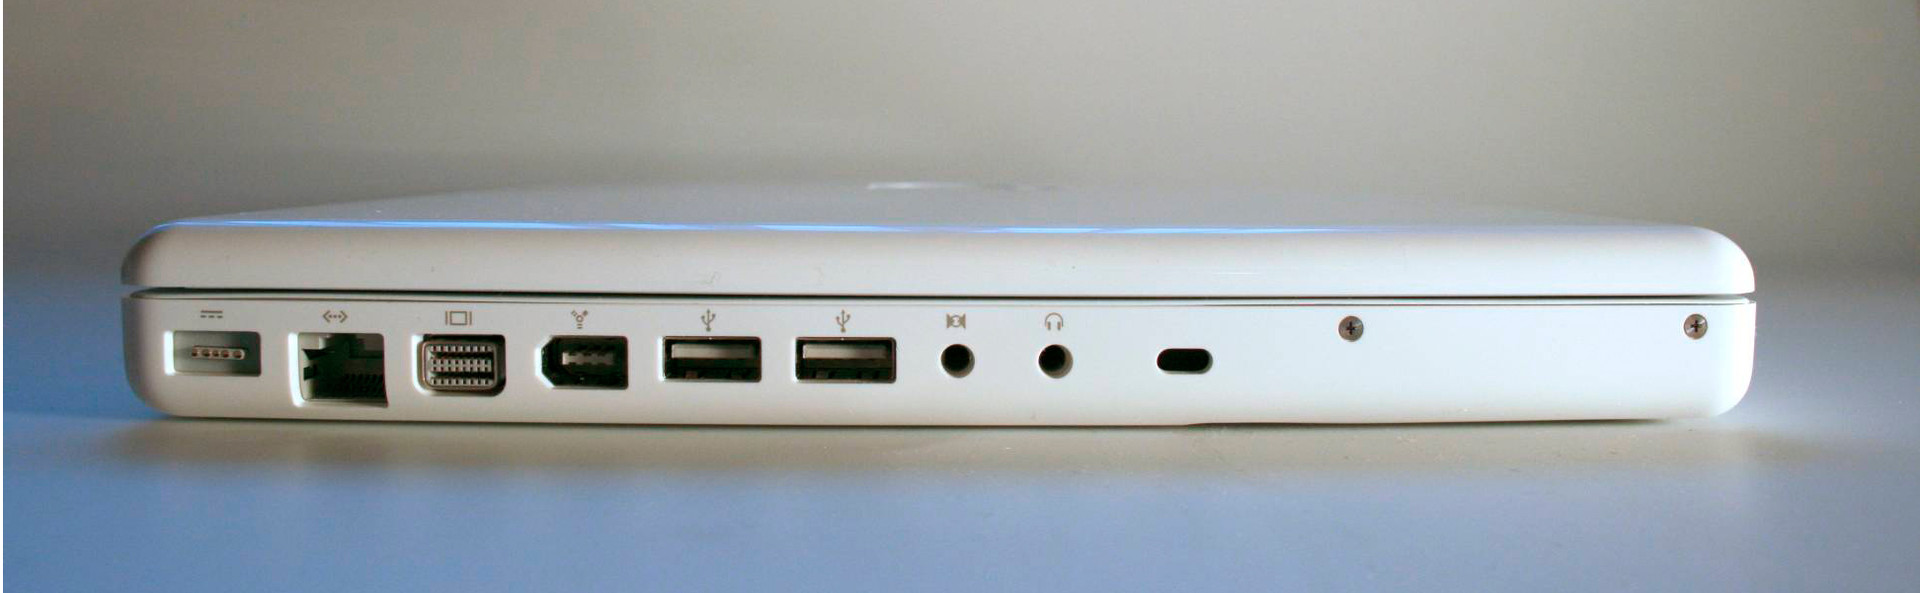 Análisis del Apple MacBook Blanco  Mediados 2009 